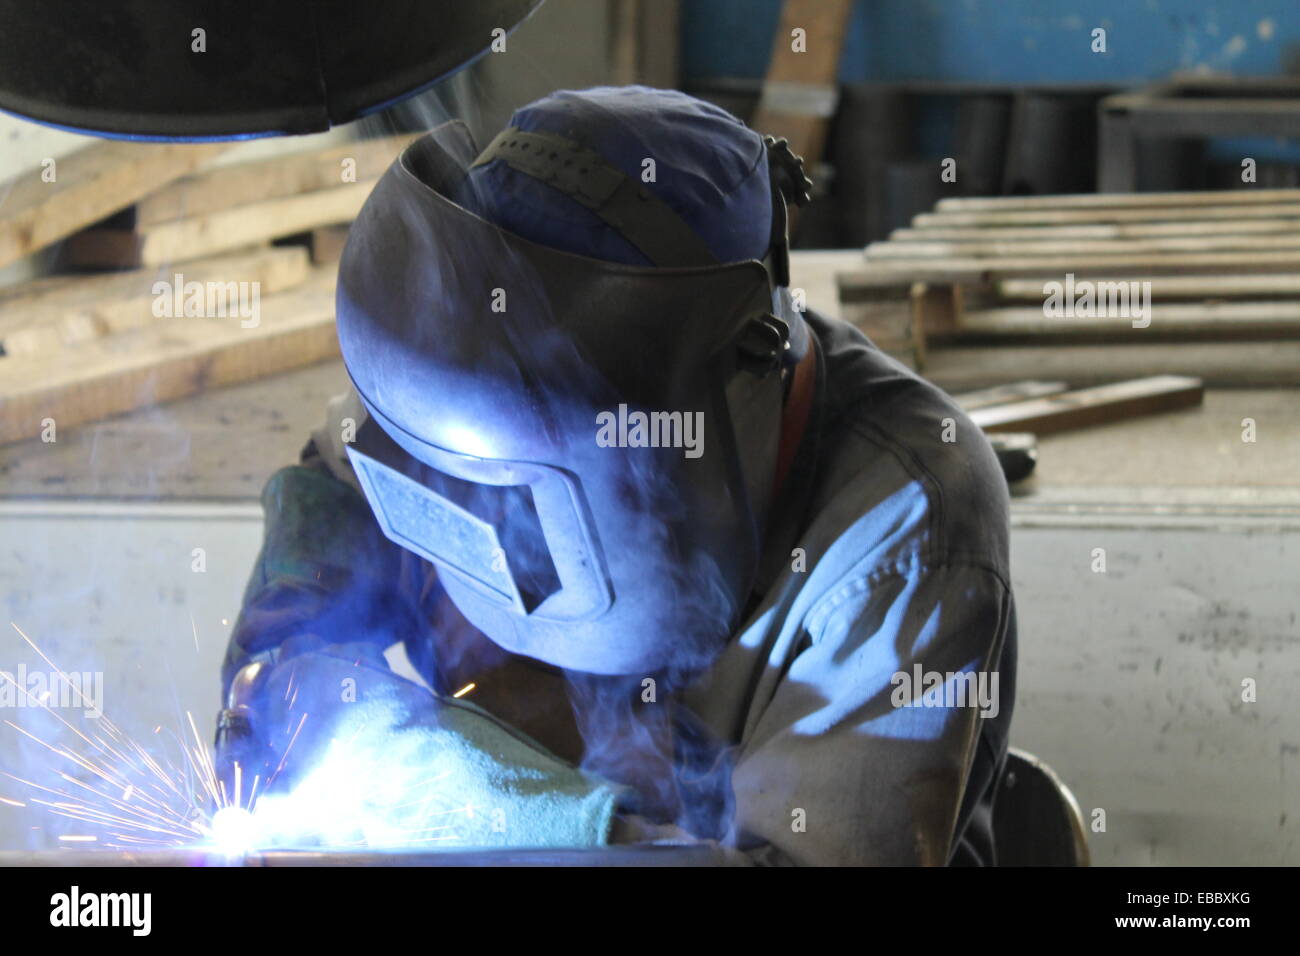 Industrial welder welding on steel in factory Stock Photo